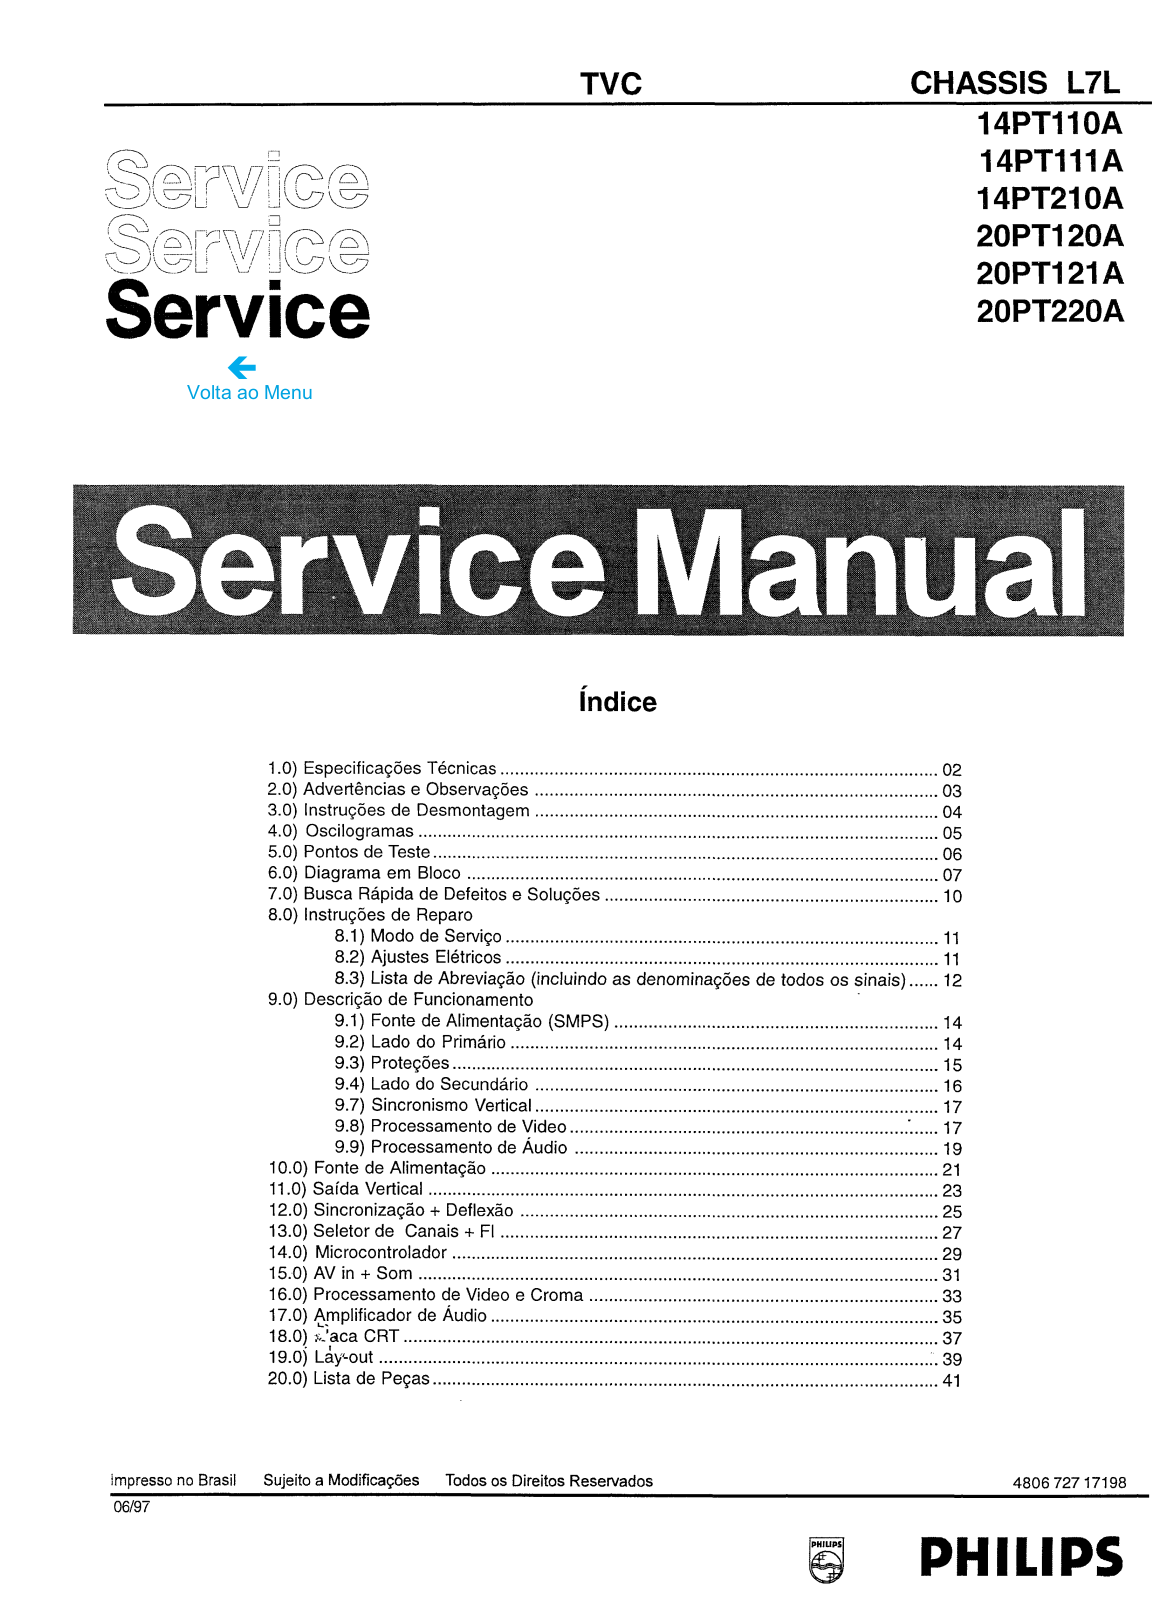 Philips L7L, 14PT110A, 14PT111A, 14PT210A, 20PT120A Service Manual